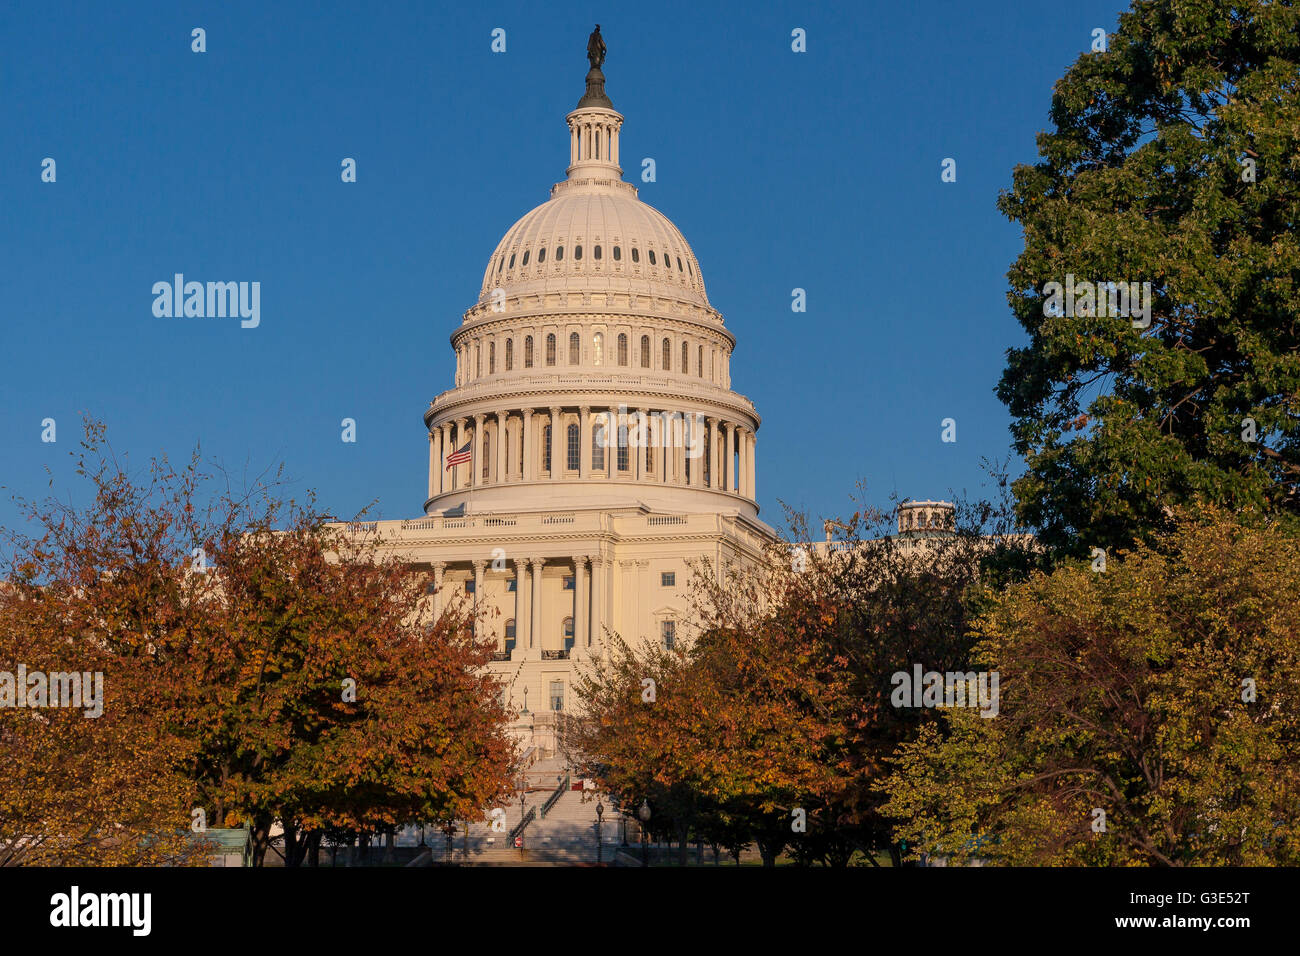 Das Kapitolgebäude der Vereinigten Staaten, der Treffpunkt des Senats und des Repräsentantenhauses, befindet sich auf dem Capitol Hill in Washington DC Stockfoto